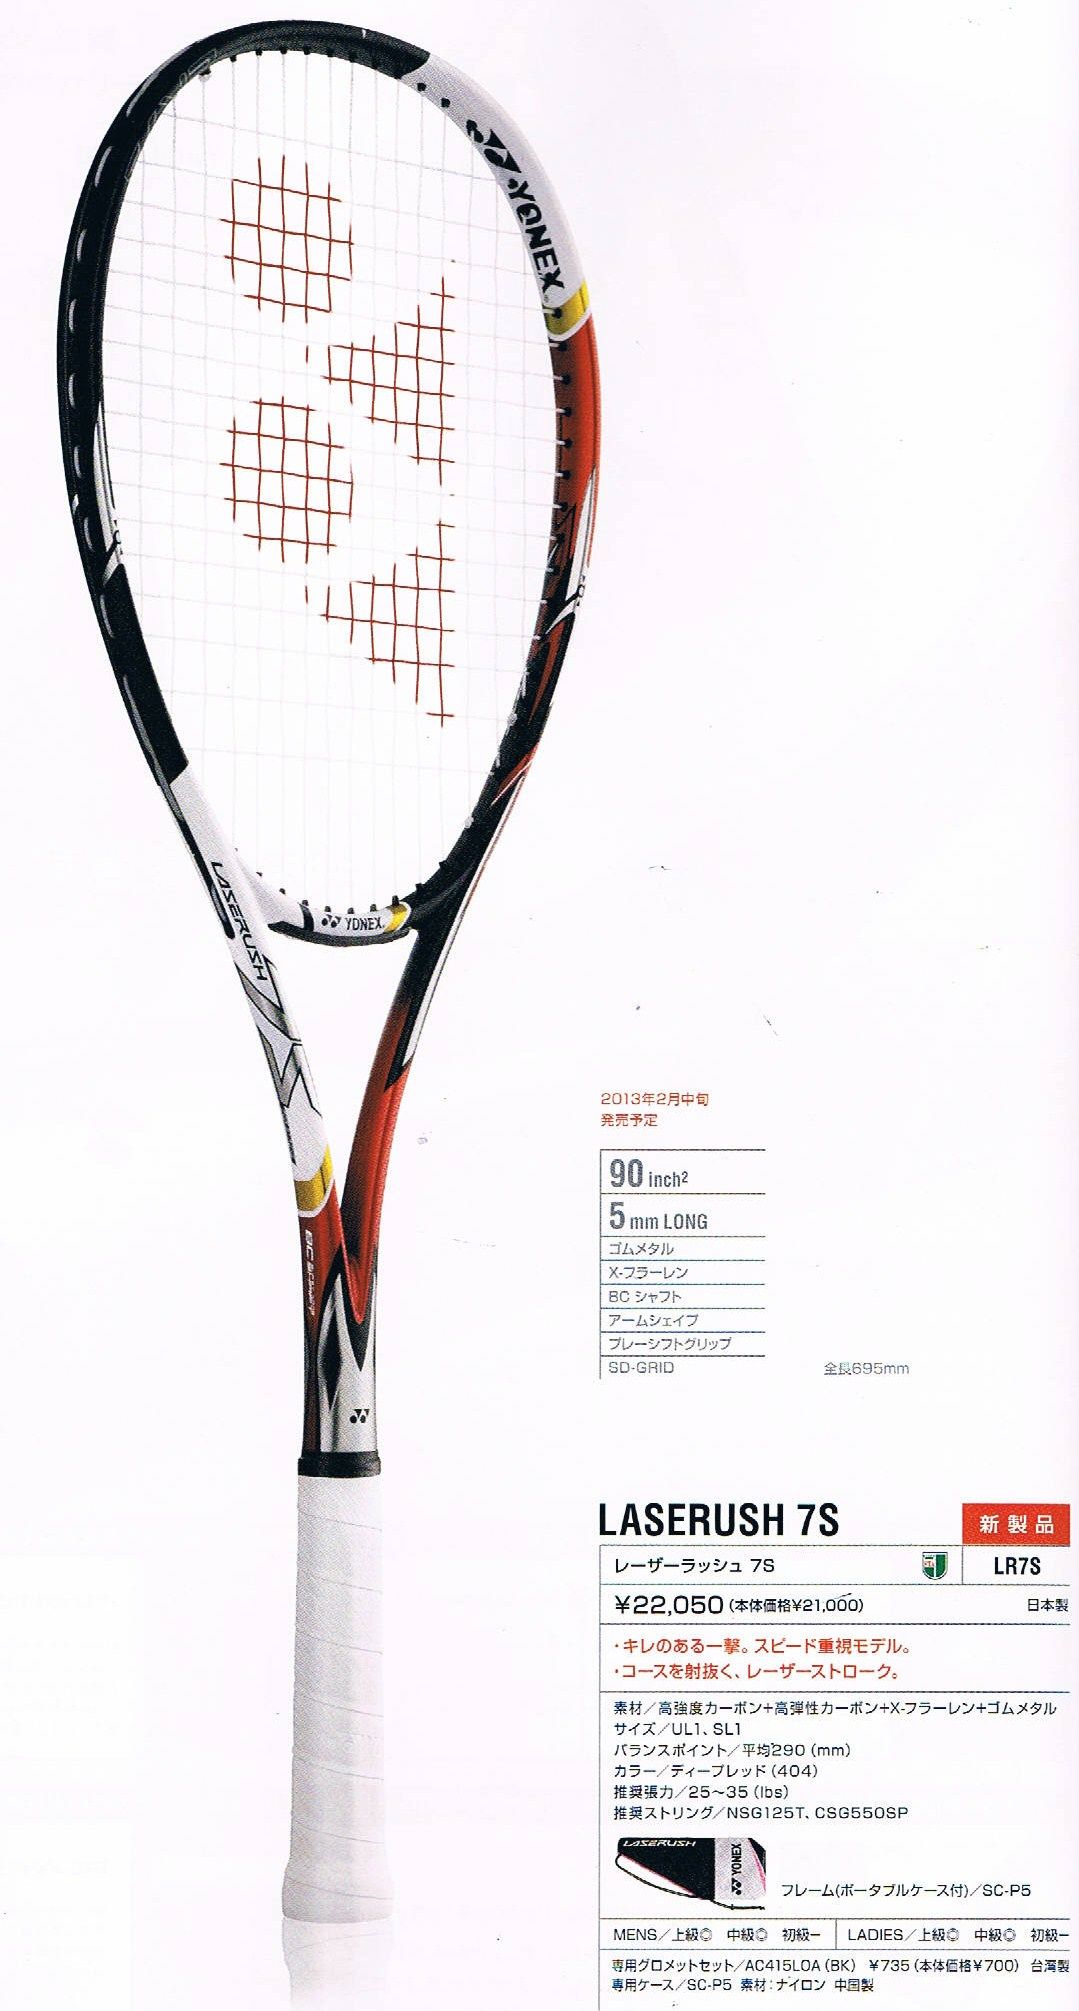 ソフトテニス ラケット レーザーラッシュ7s